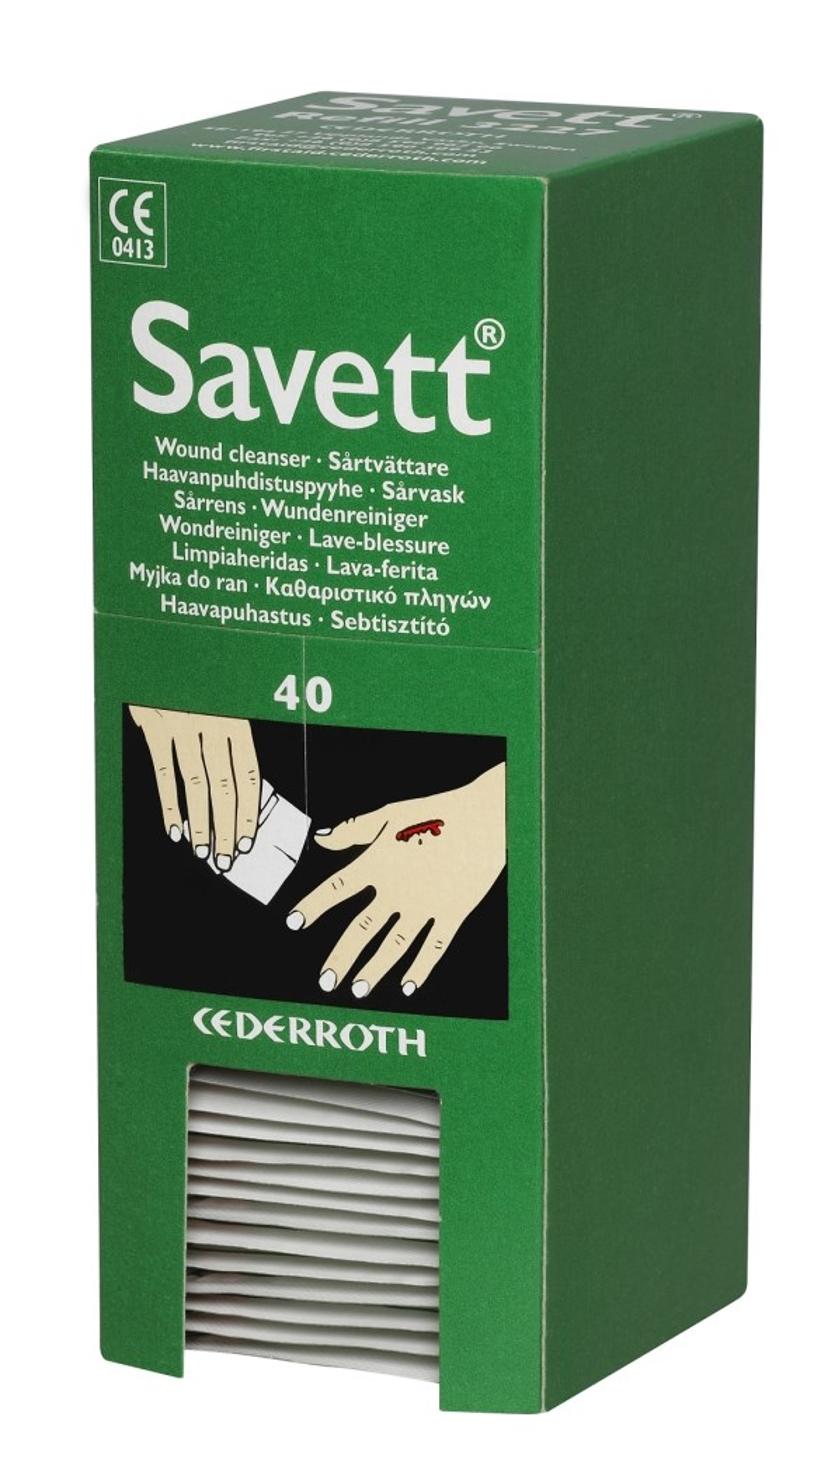 Cederroth Savett Refill 3227 Sårtvätt 40st/fp